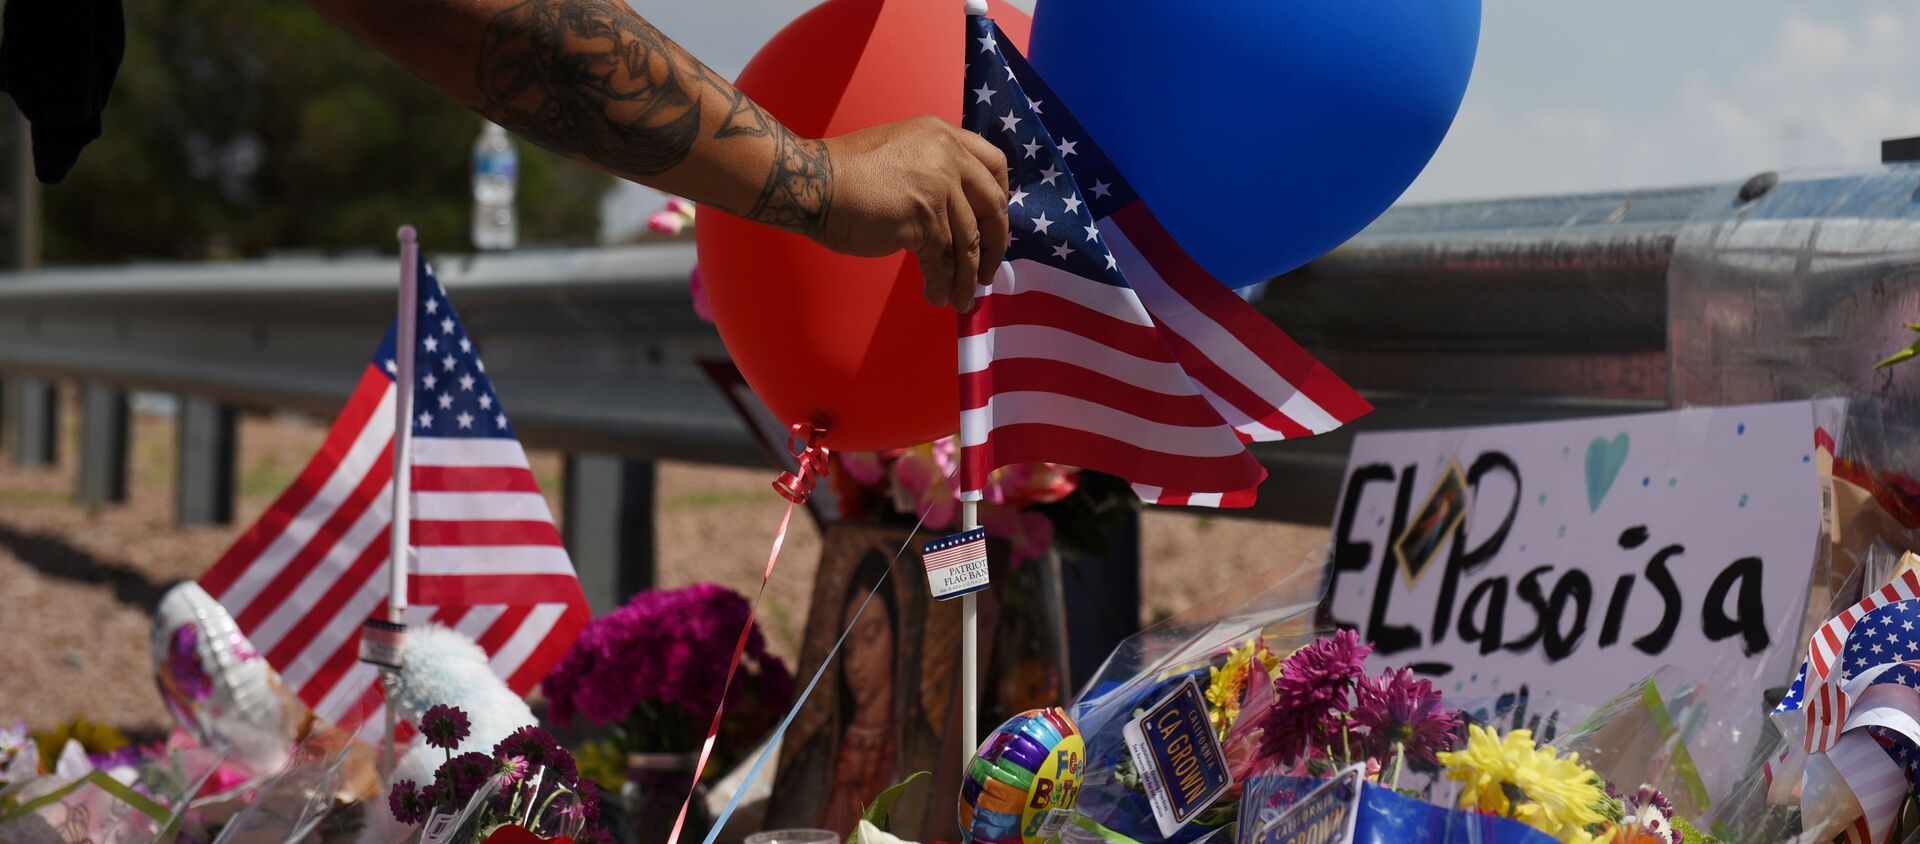 La bandera de EEUU en el lugar deluto por las víctimas del tiroteo en El Paso - Sputnik Mundo, 1920, 05.08.2019